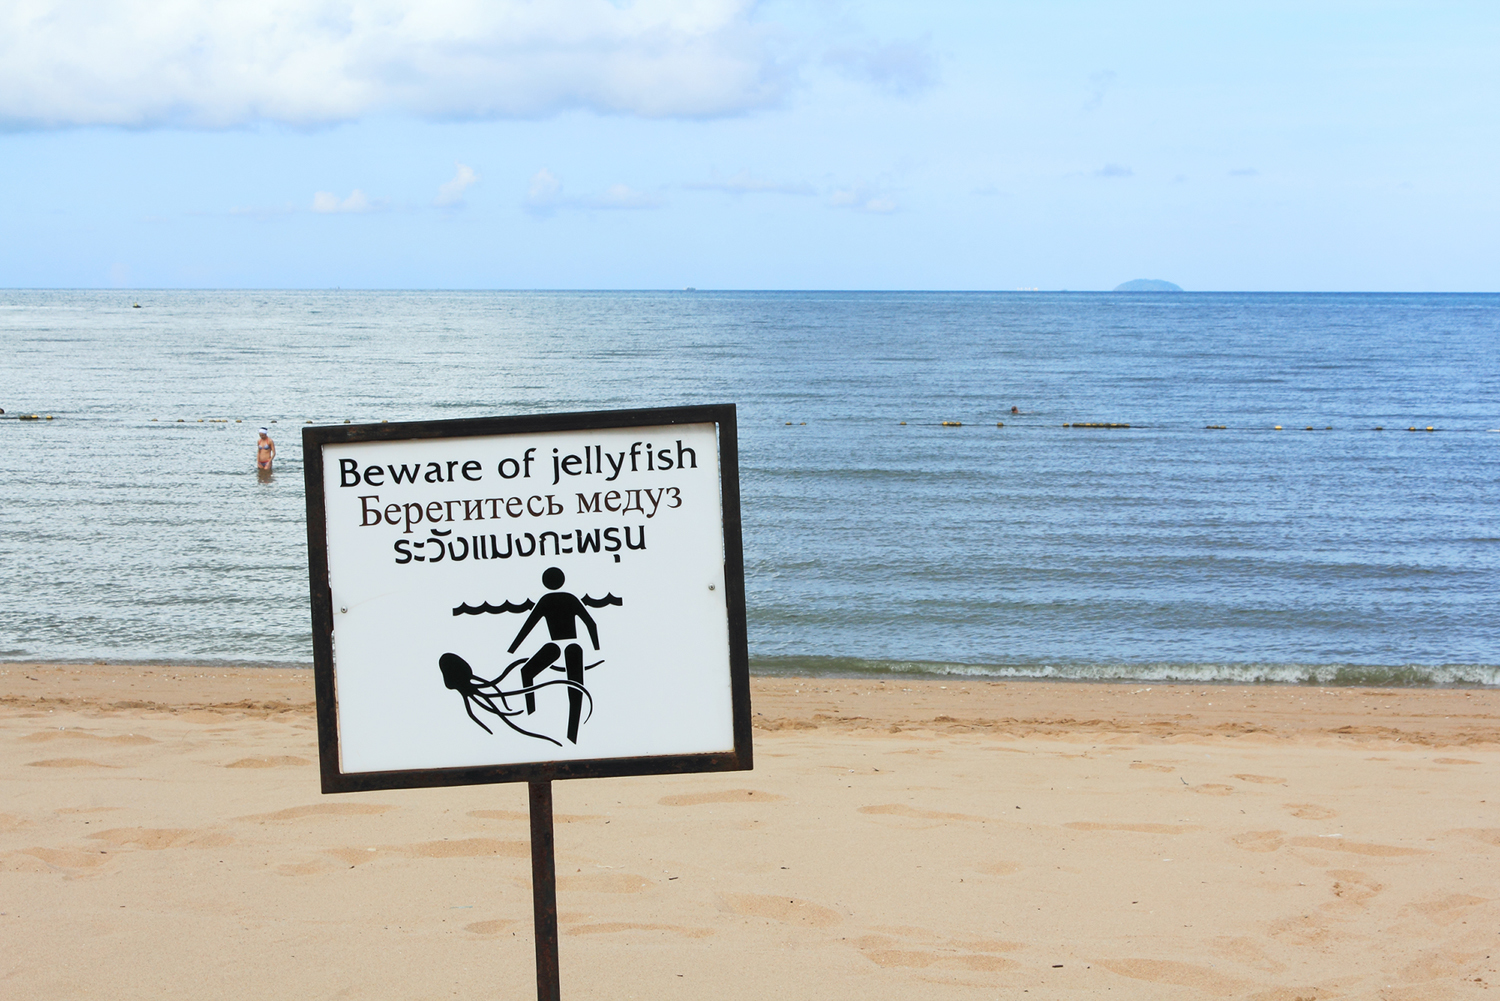 Beware of jellyfish